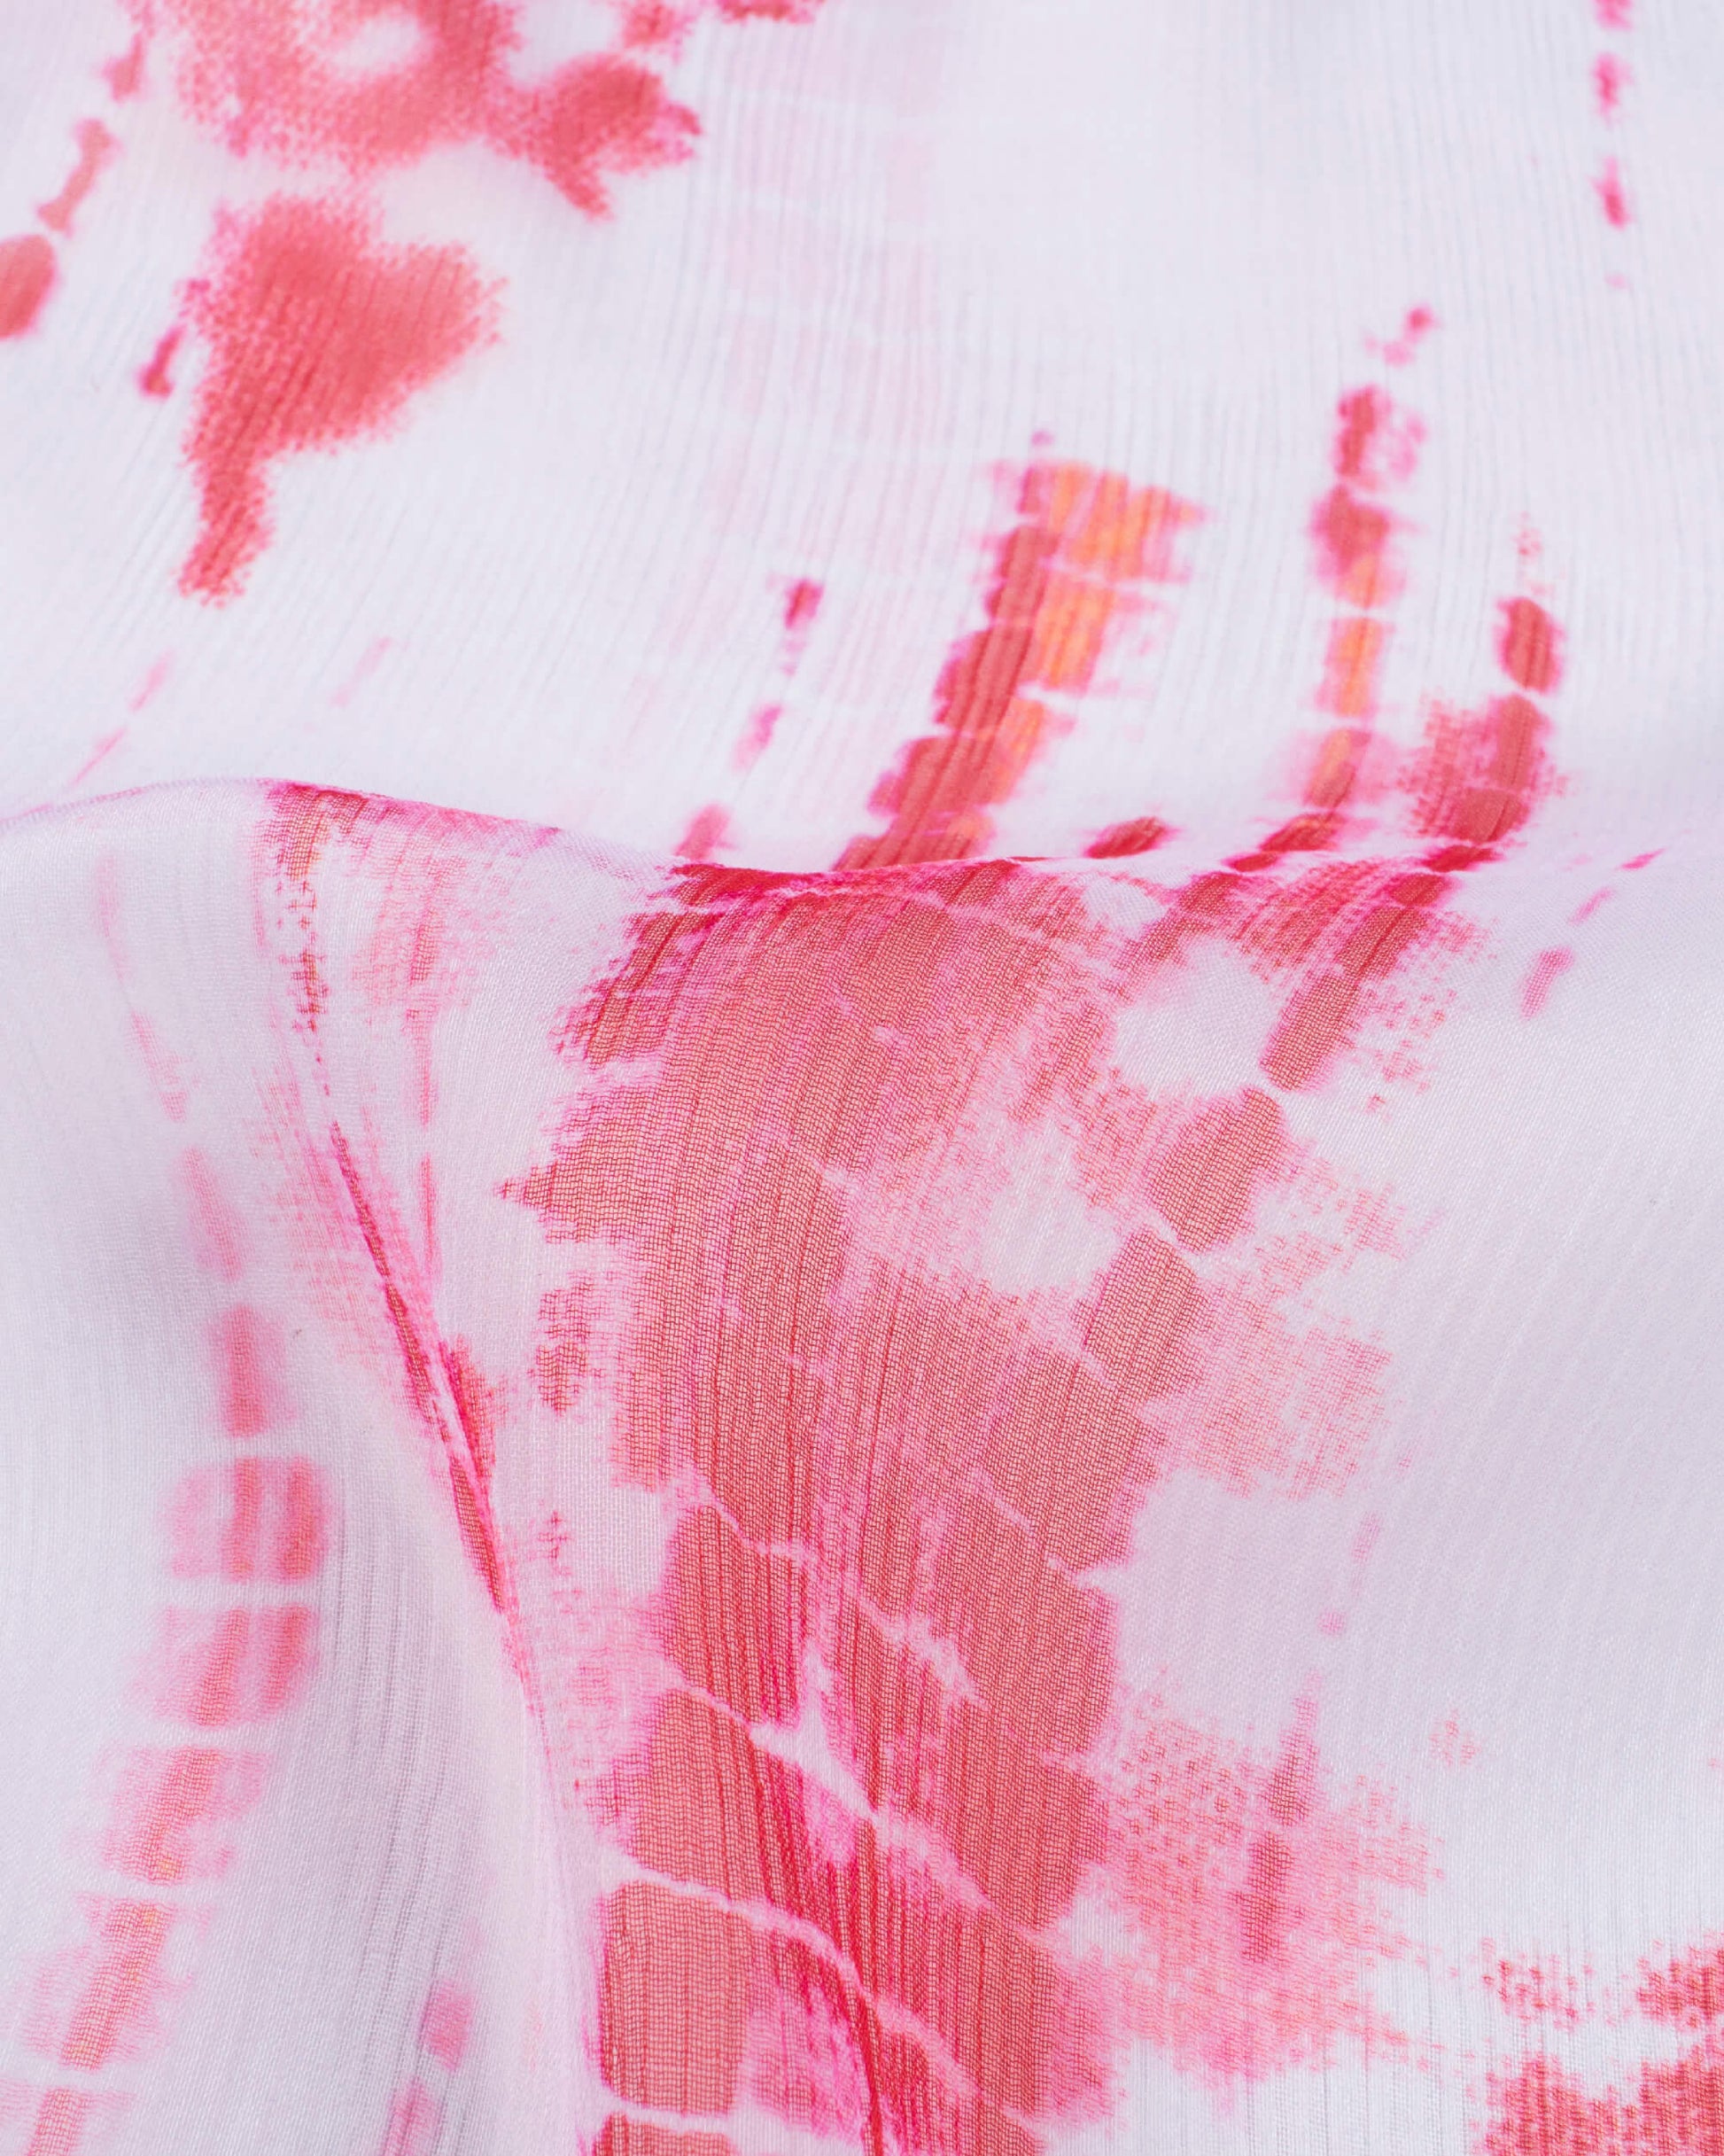 White And Pink Shibori Pattern Digital Print Bemberg Chiffon Dupatta With Tassels - Fabcurate